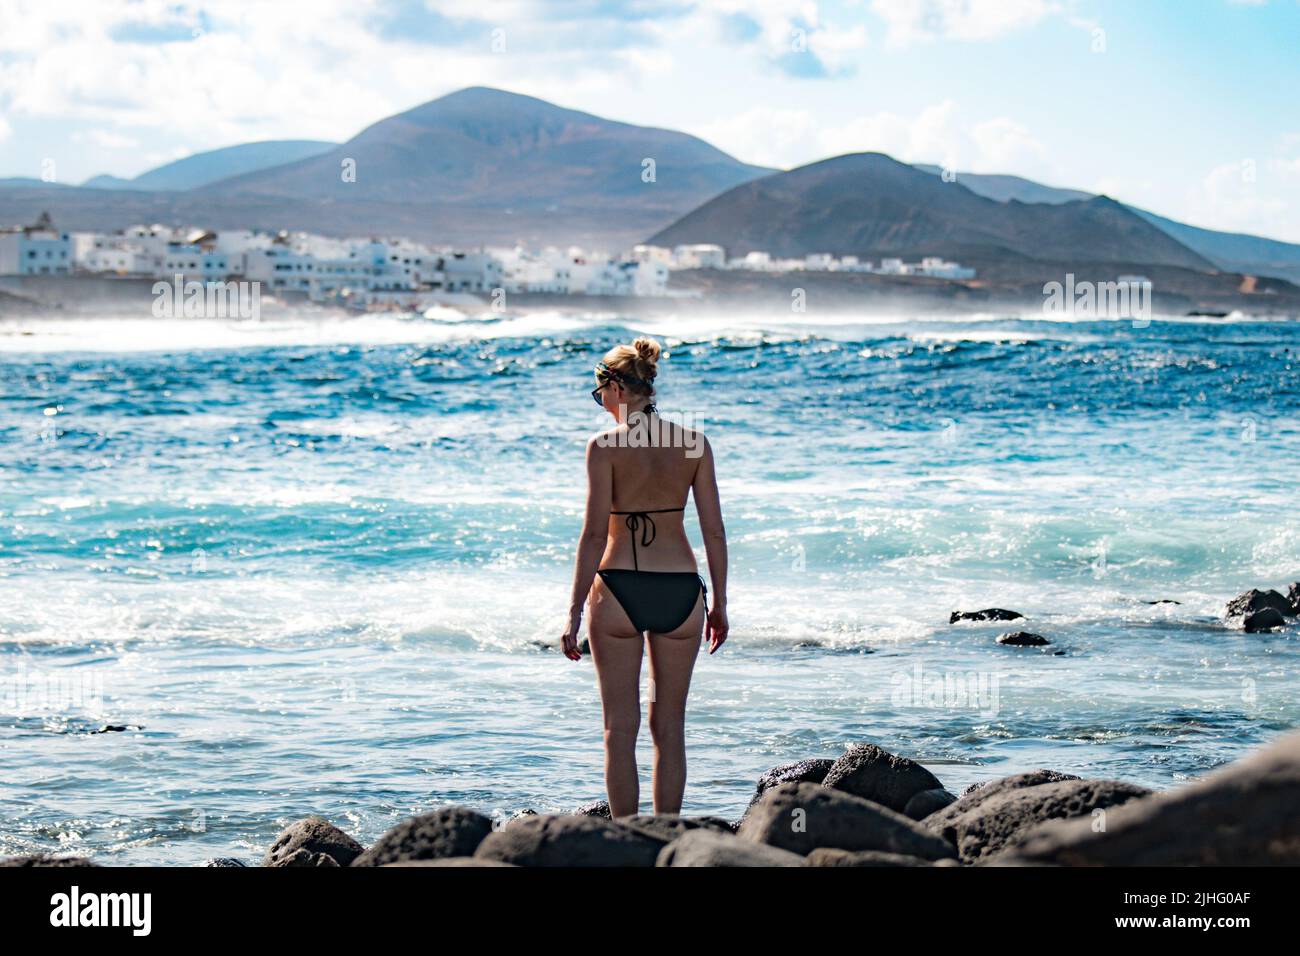 Female tourist at wild rocky beach and coastline of surf spot La Santa Lanzarote, Canary Islands, Spain. La Santa village and volcano mountain in Stock Photo